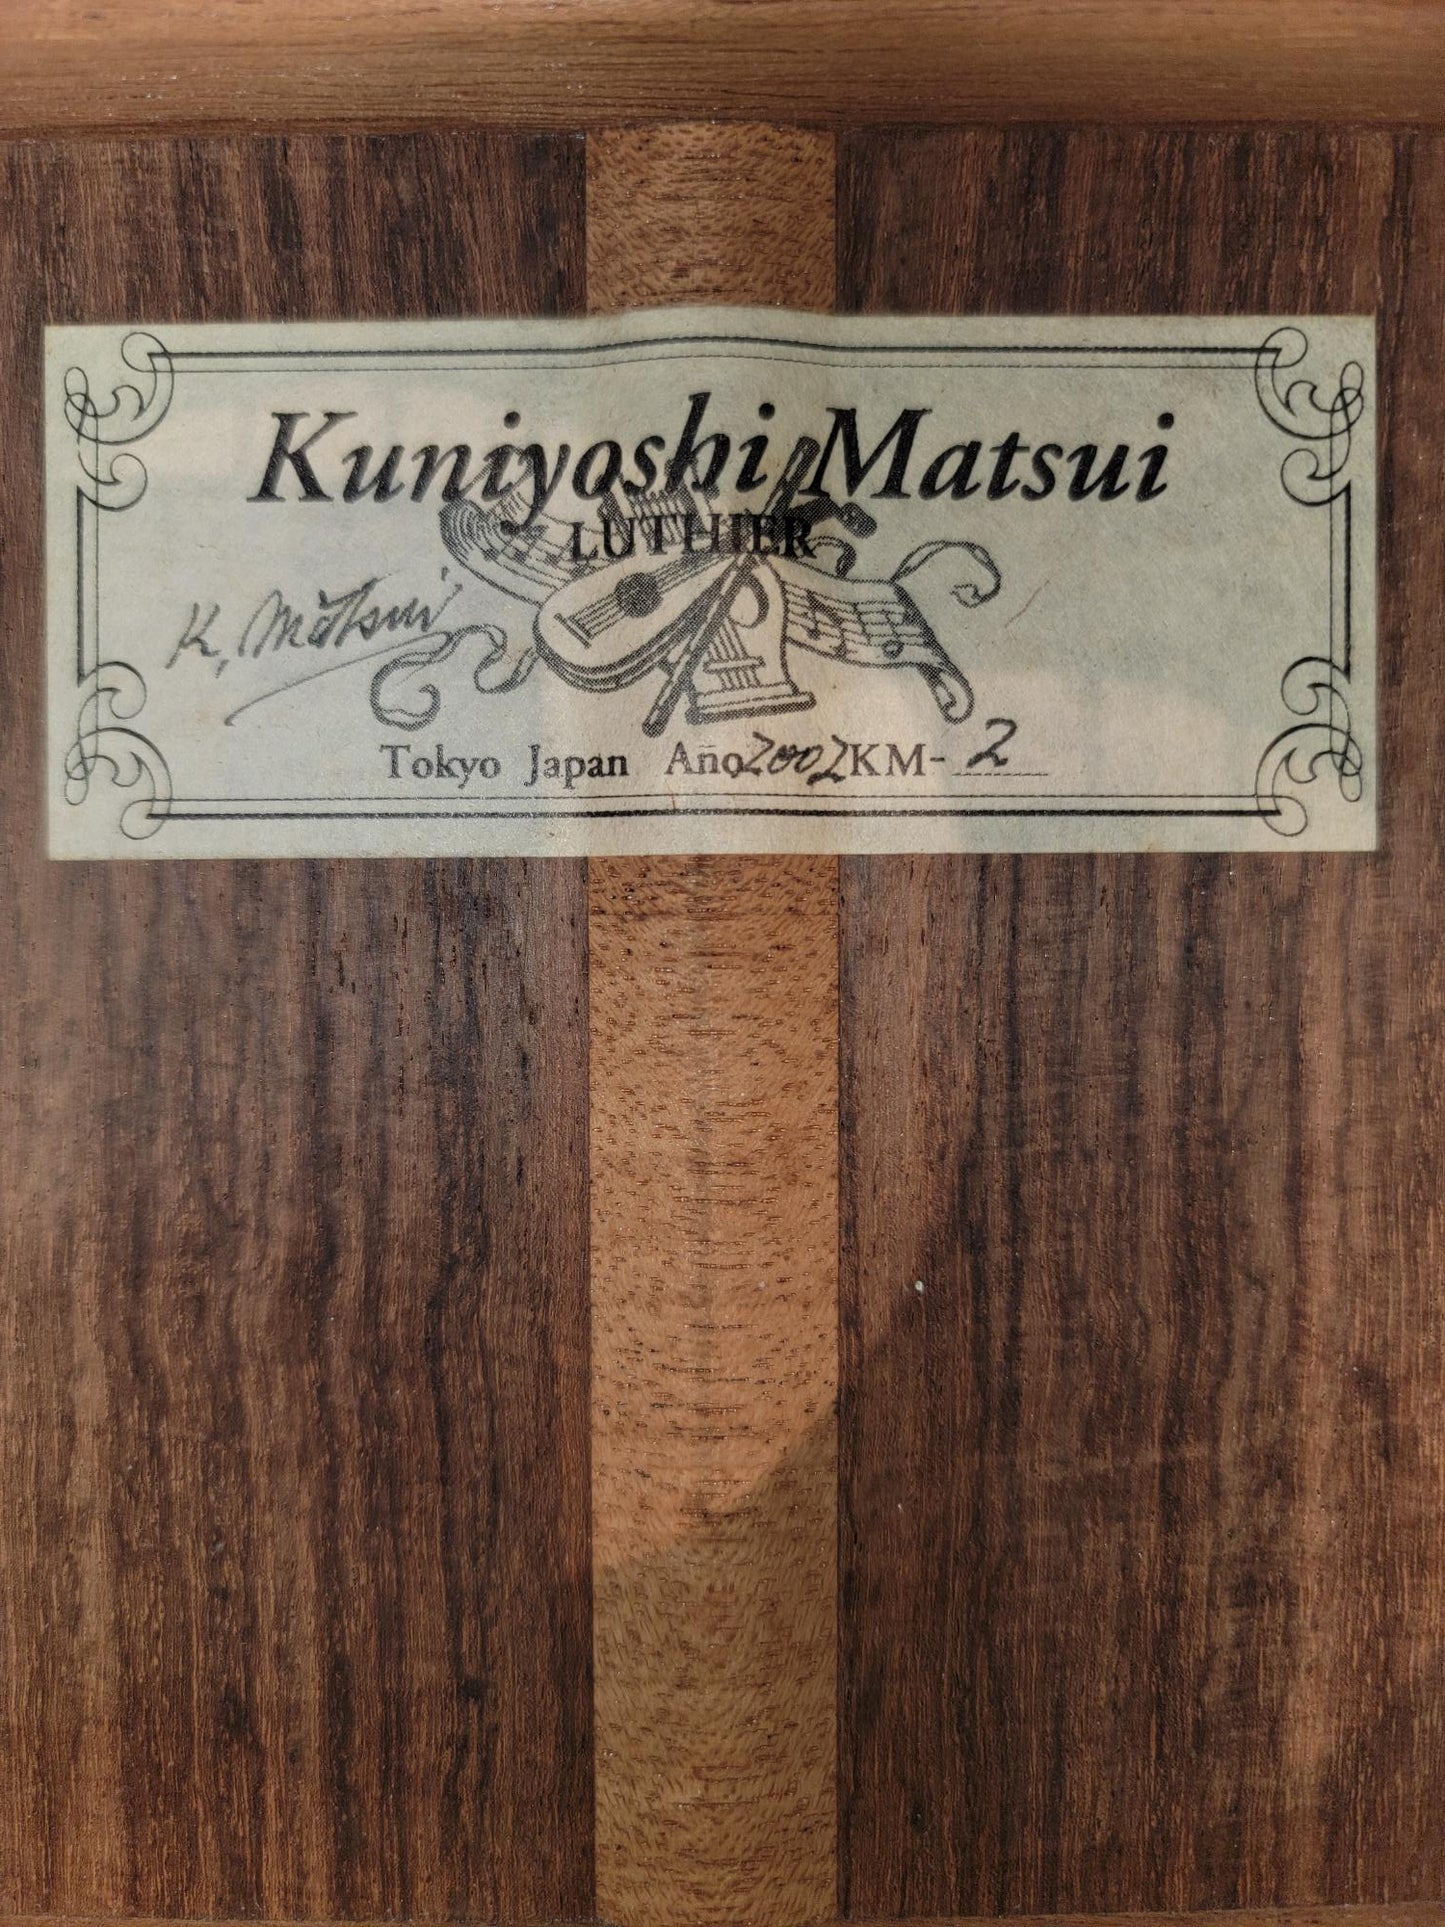 Kuniyoshi Matsui Model KM-2